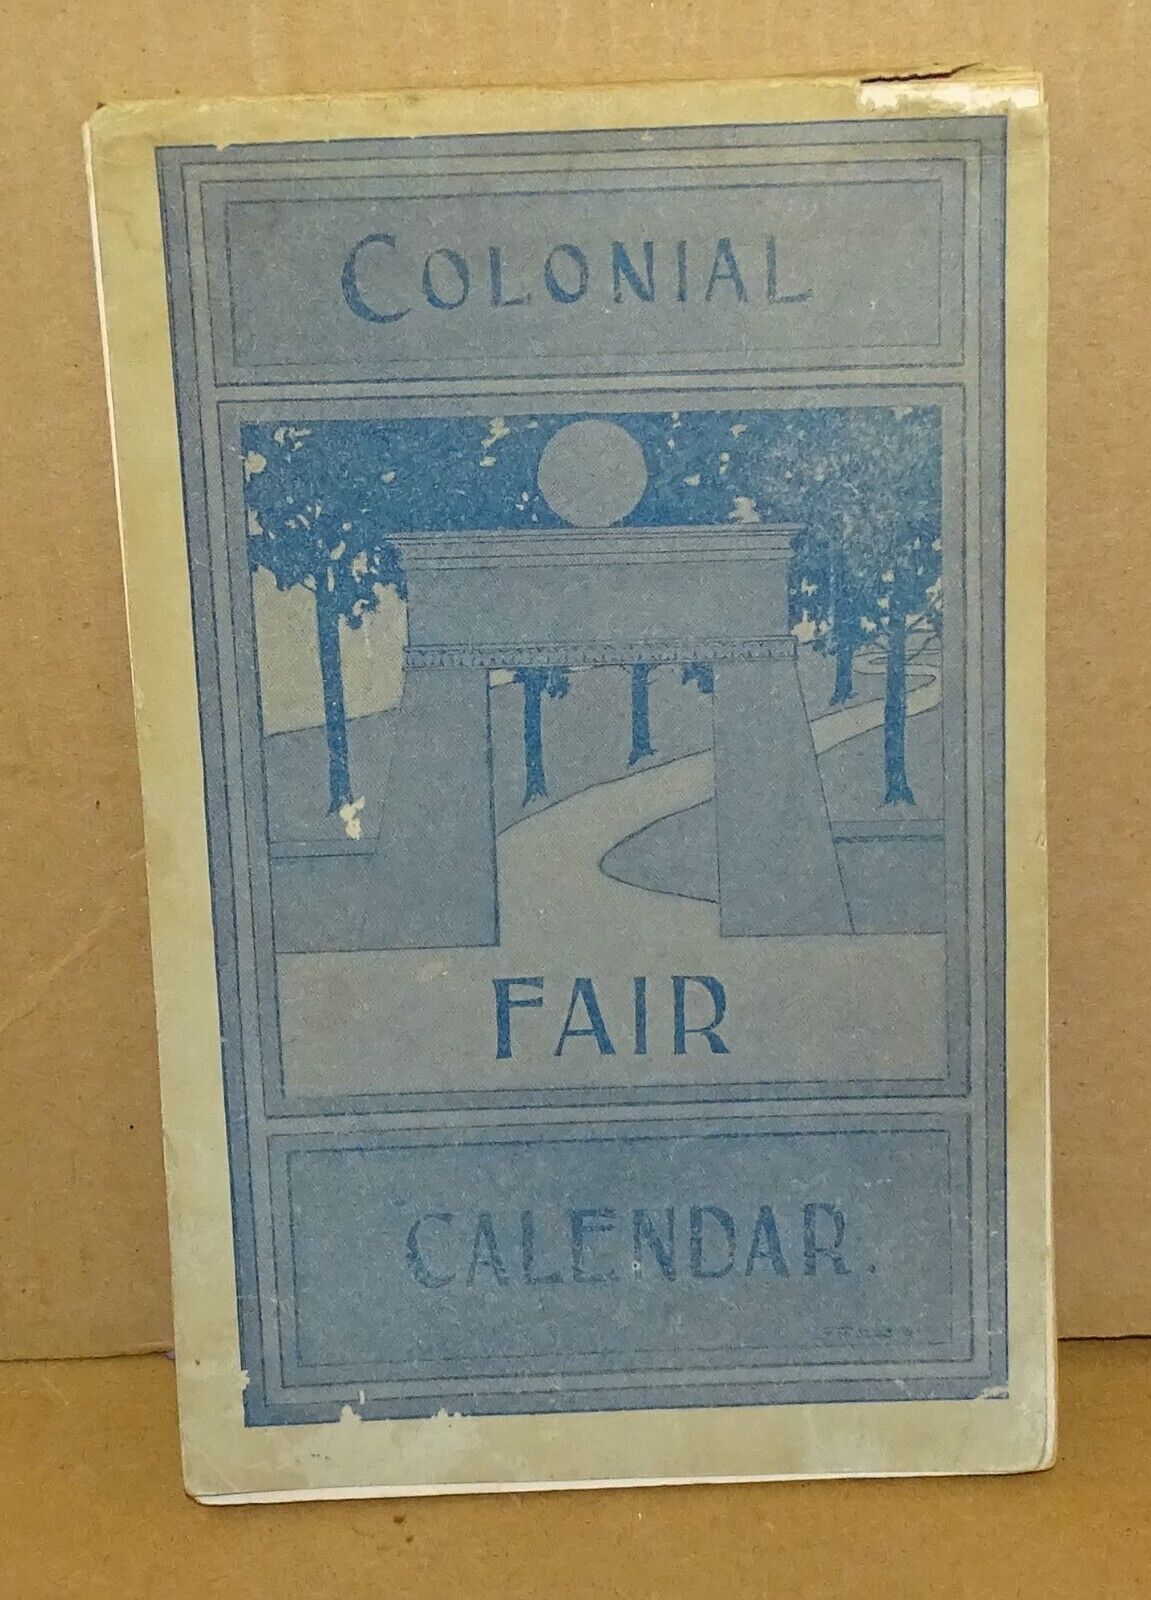 1900 Colonial Fair Calendar Stoughton Mass. - ELISHA CAPEN MONK